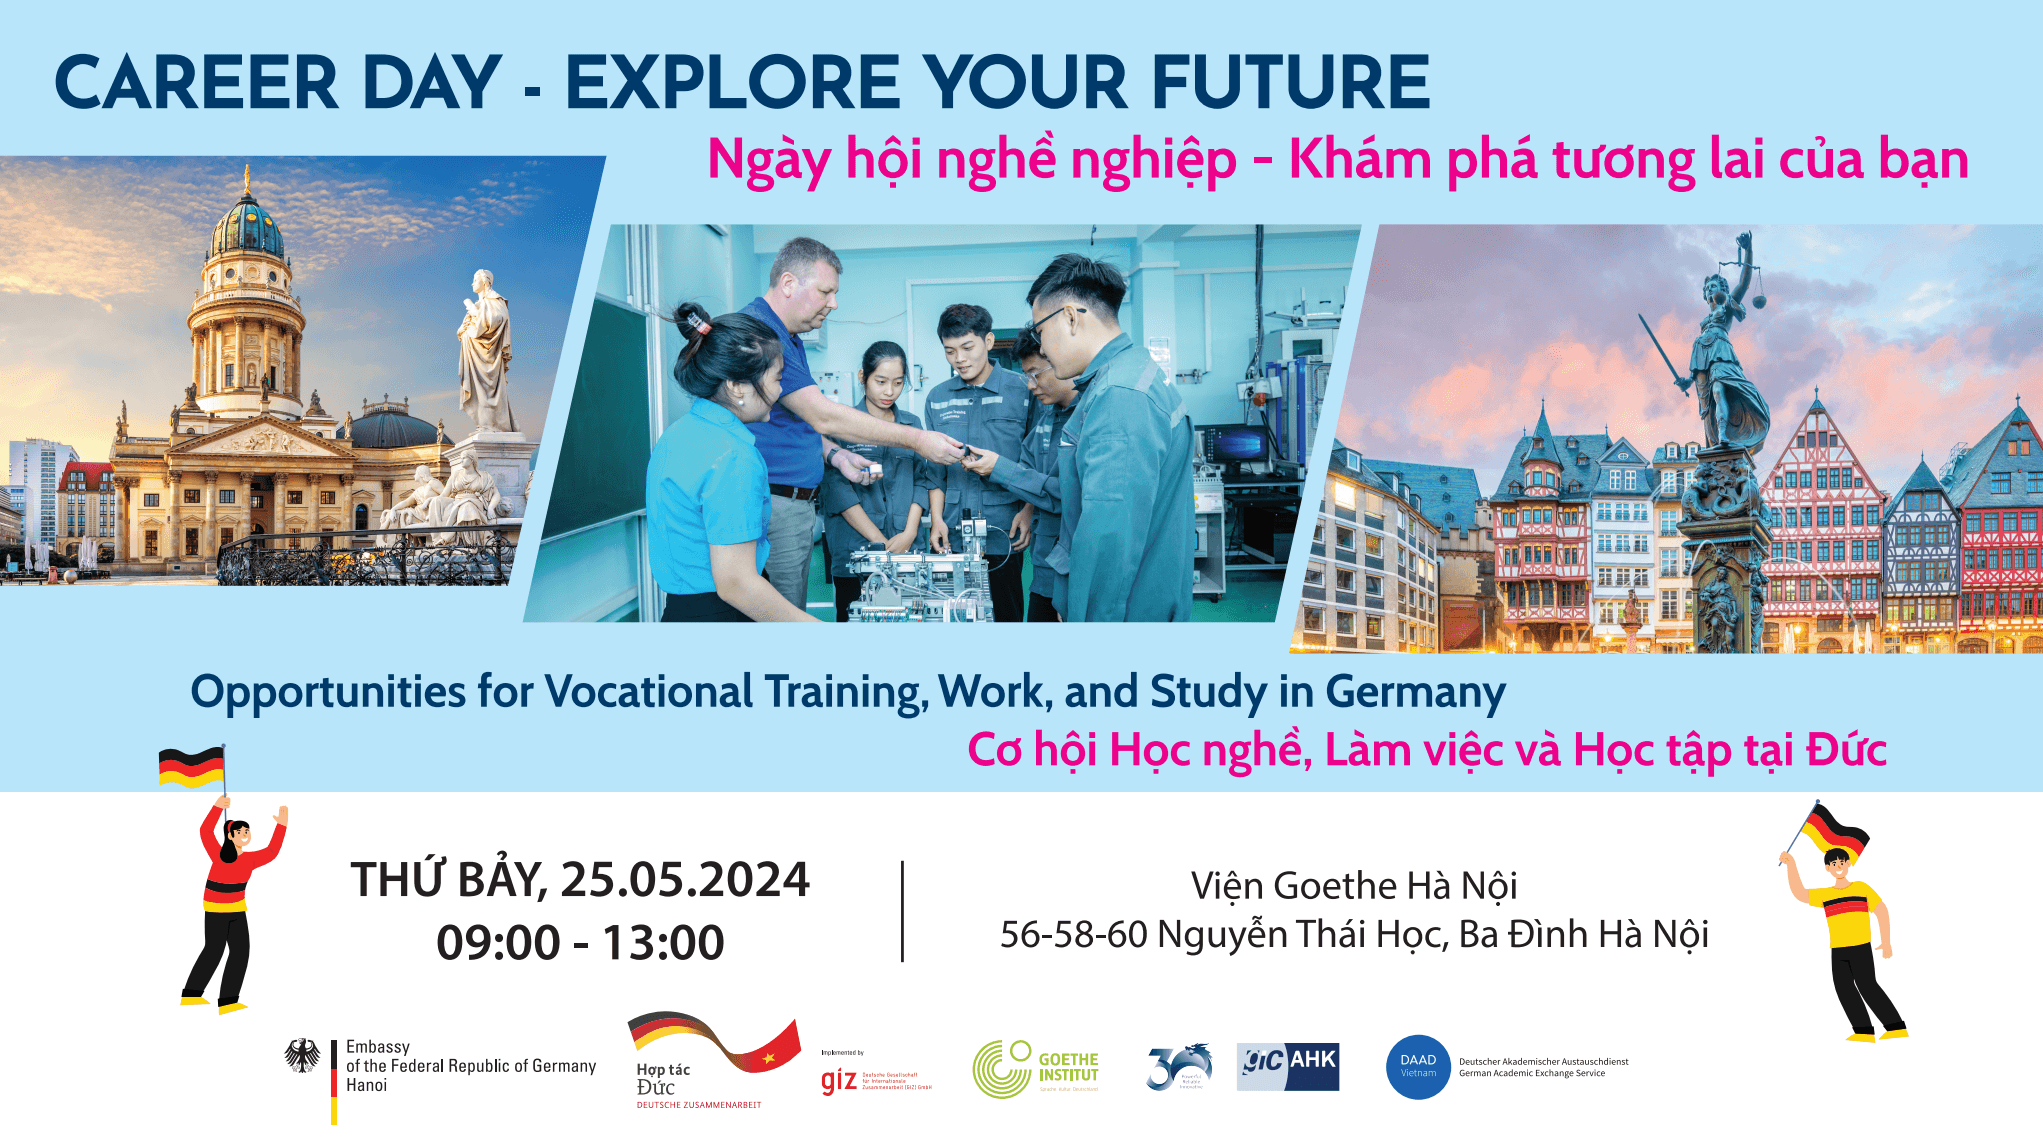 Giới thiệu các cơ hội học nghề, làm việc và học tập tại Đức